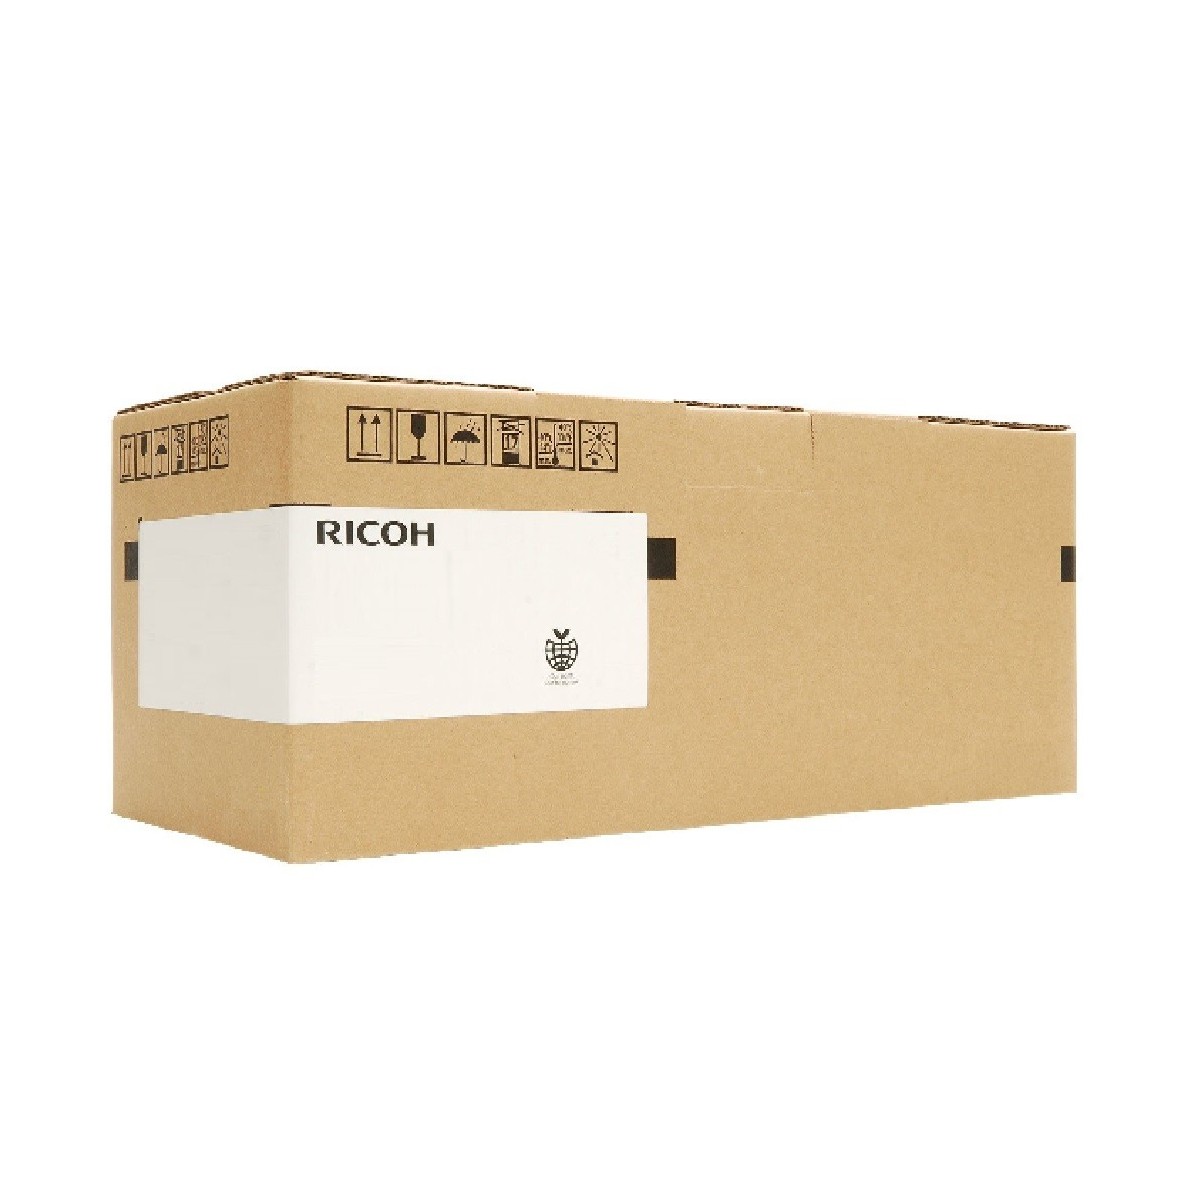 Ricoh G1792200 - Maintenance kit - Ricoh - 300 g - 400 g